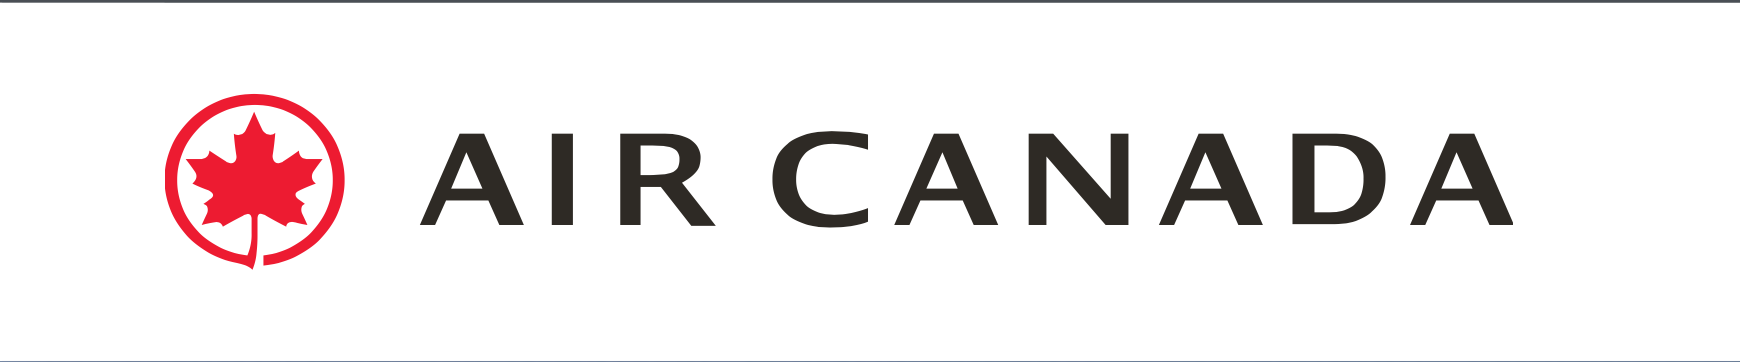 加拿大航空新 logo